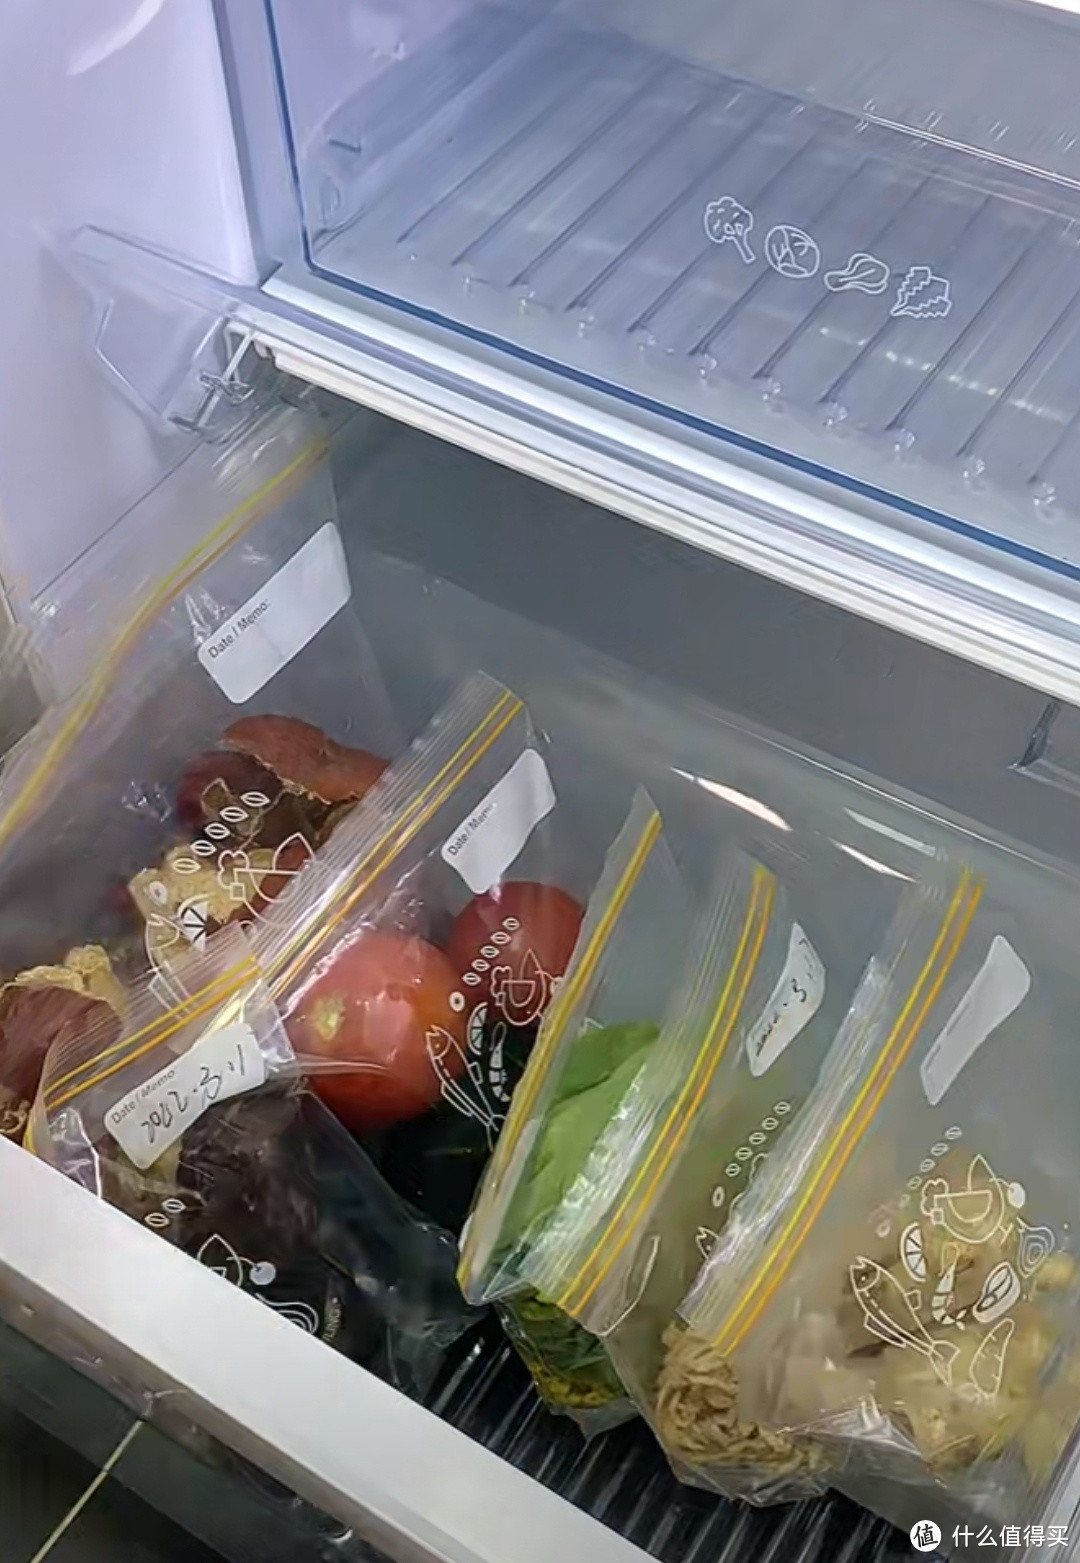 冰箱收纳这几个小妙招你一定要知道？？